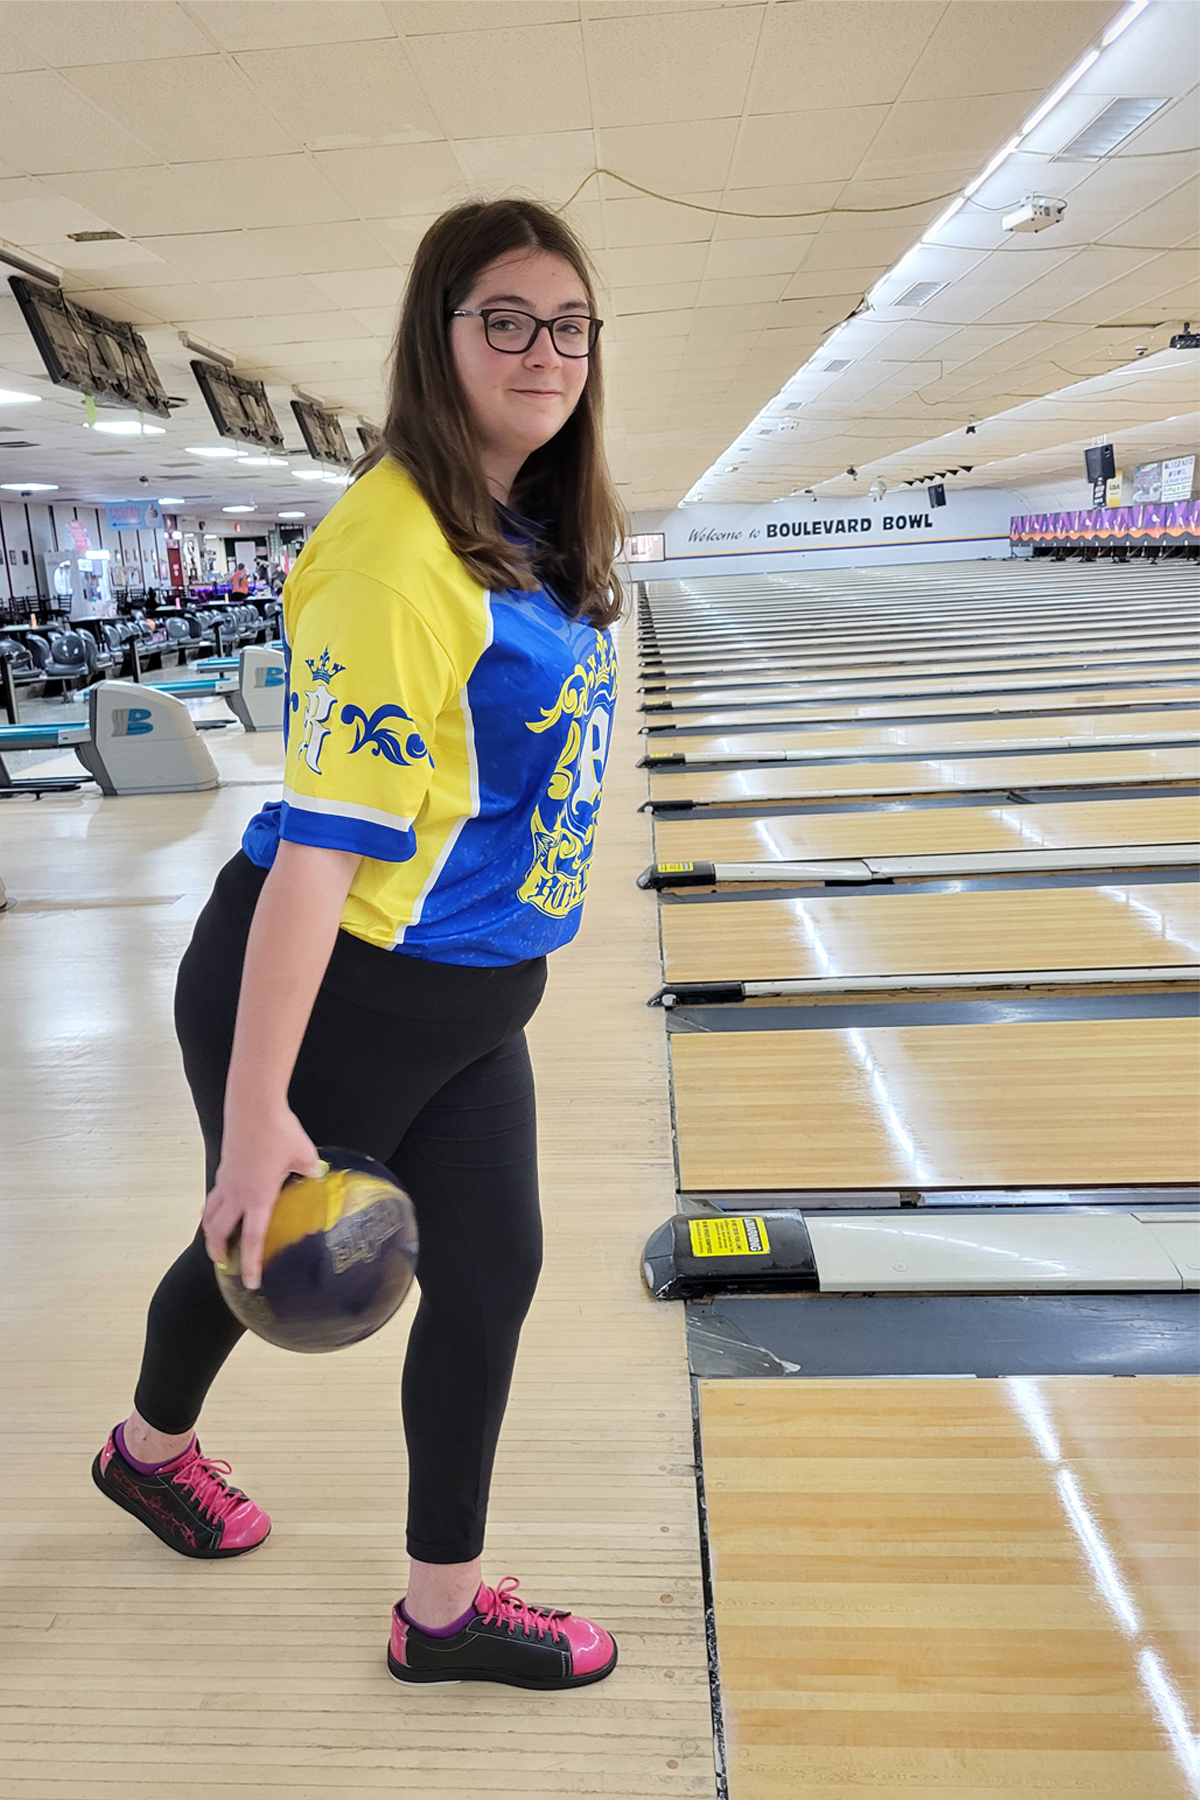 Kaitlyn Rose bowling, smiling at camera